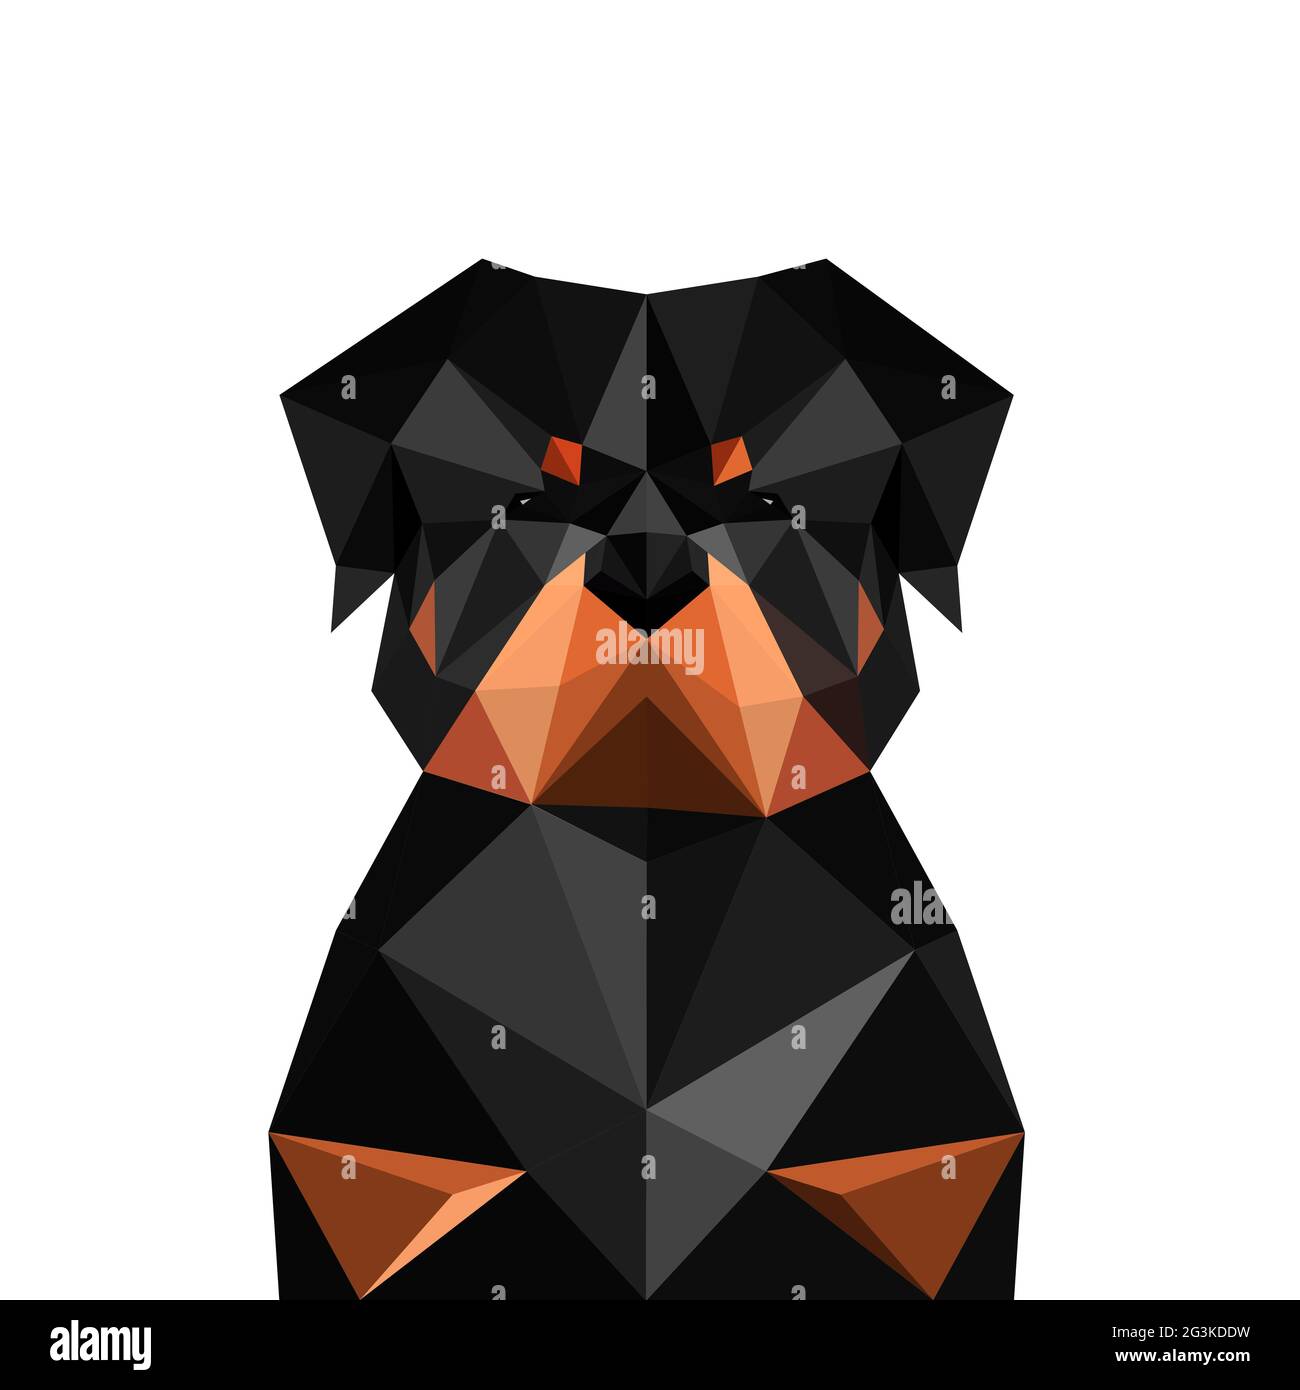 Illustration of origami rottweiler dog Stock Photo